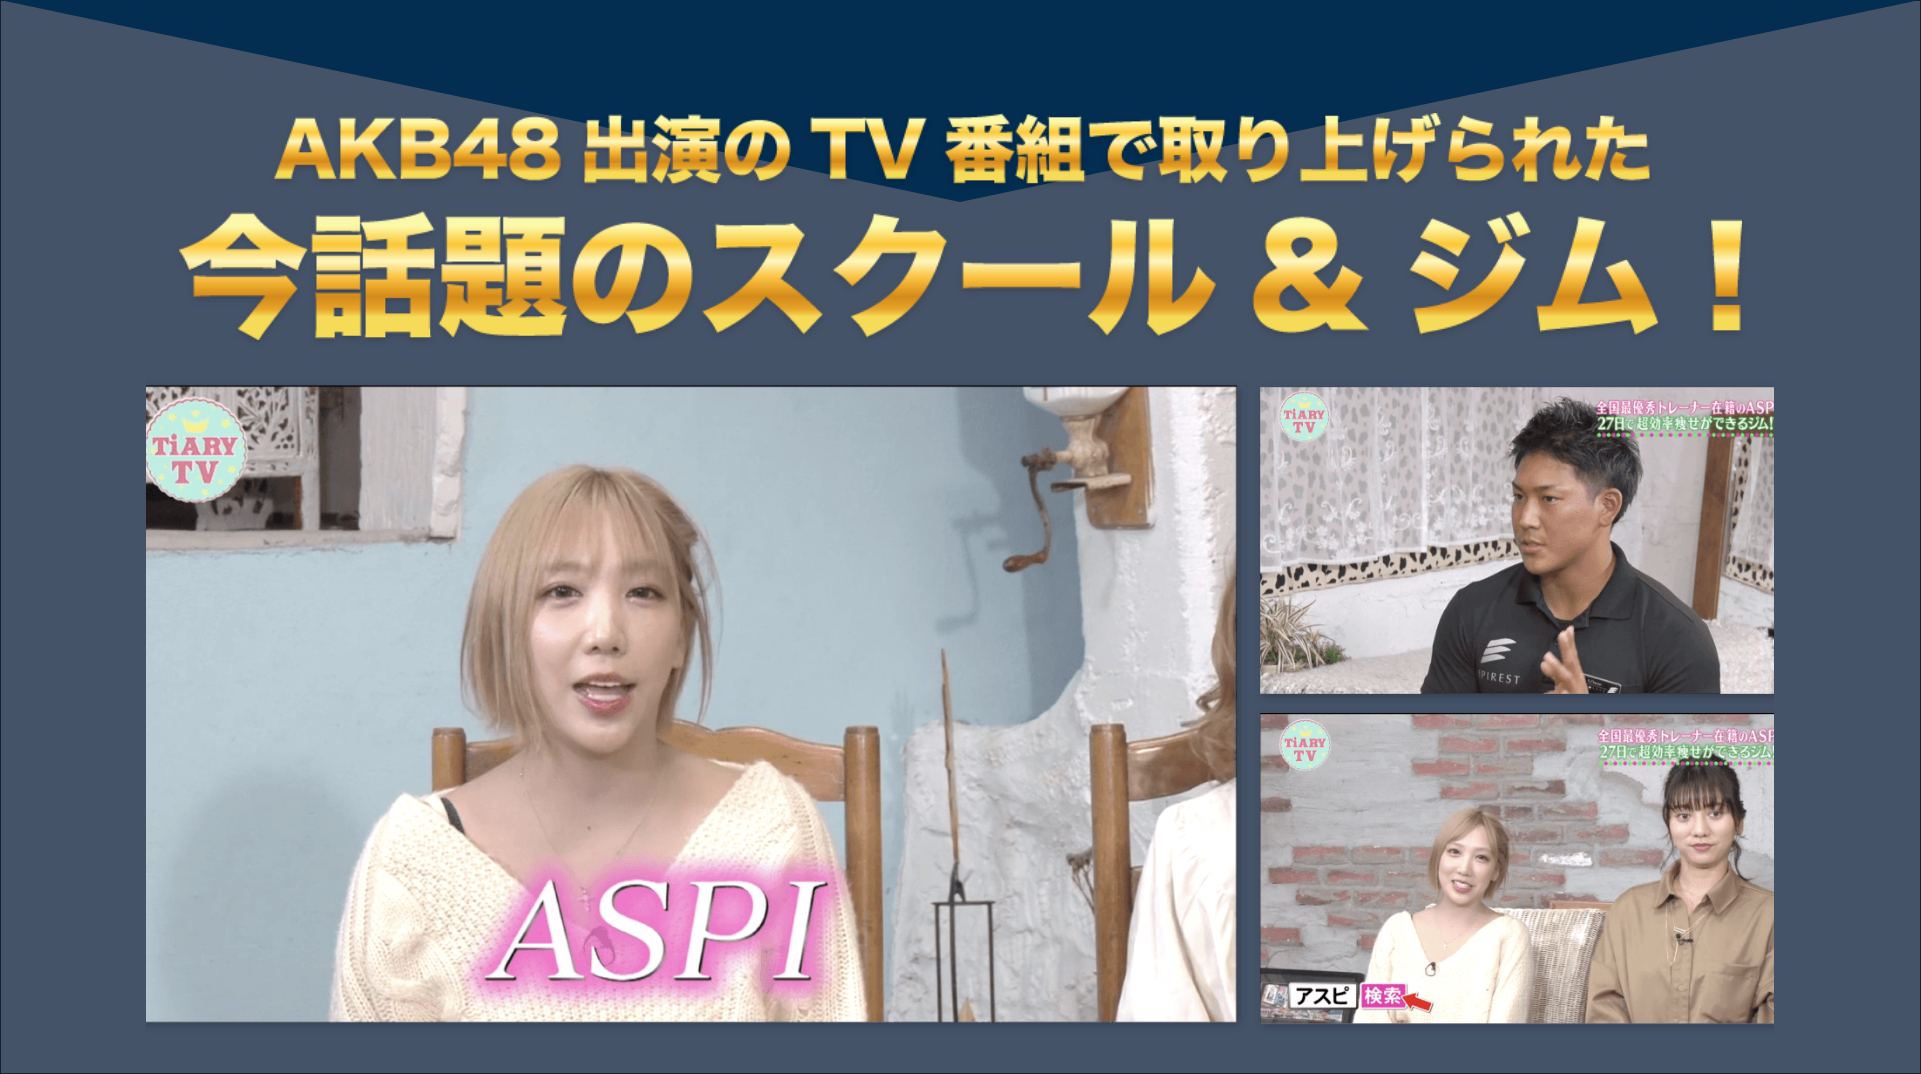 AKB48出演のTV番組で取り上げられた今話題のスクール＆ジム！